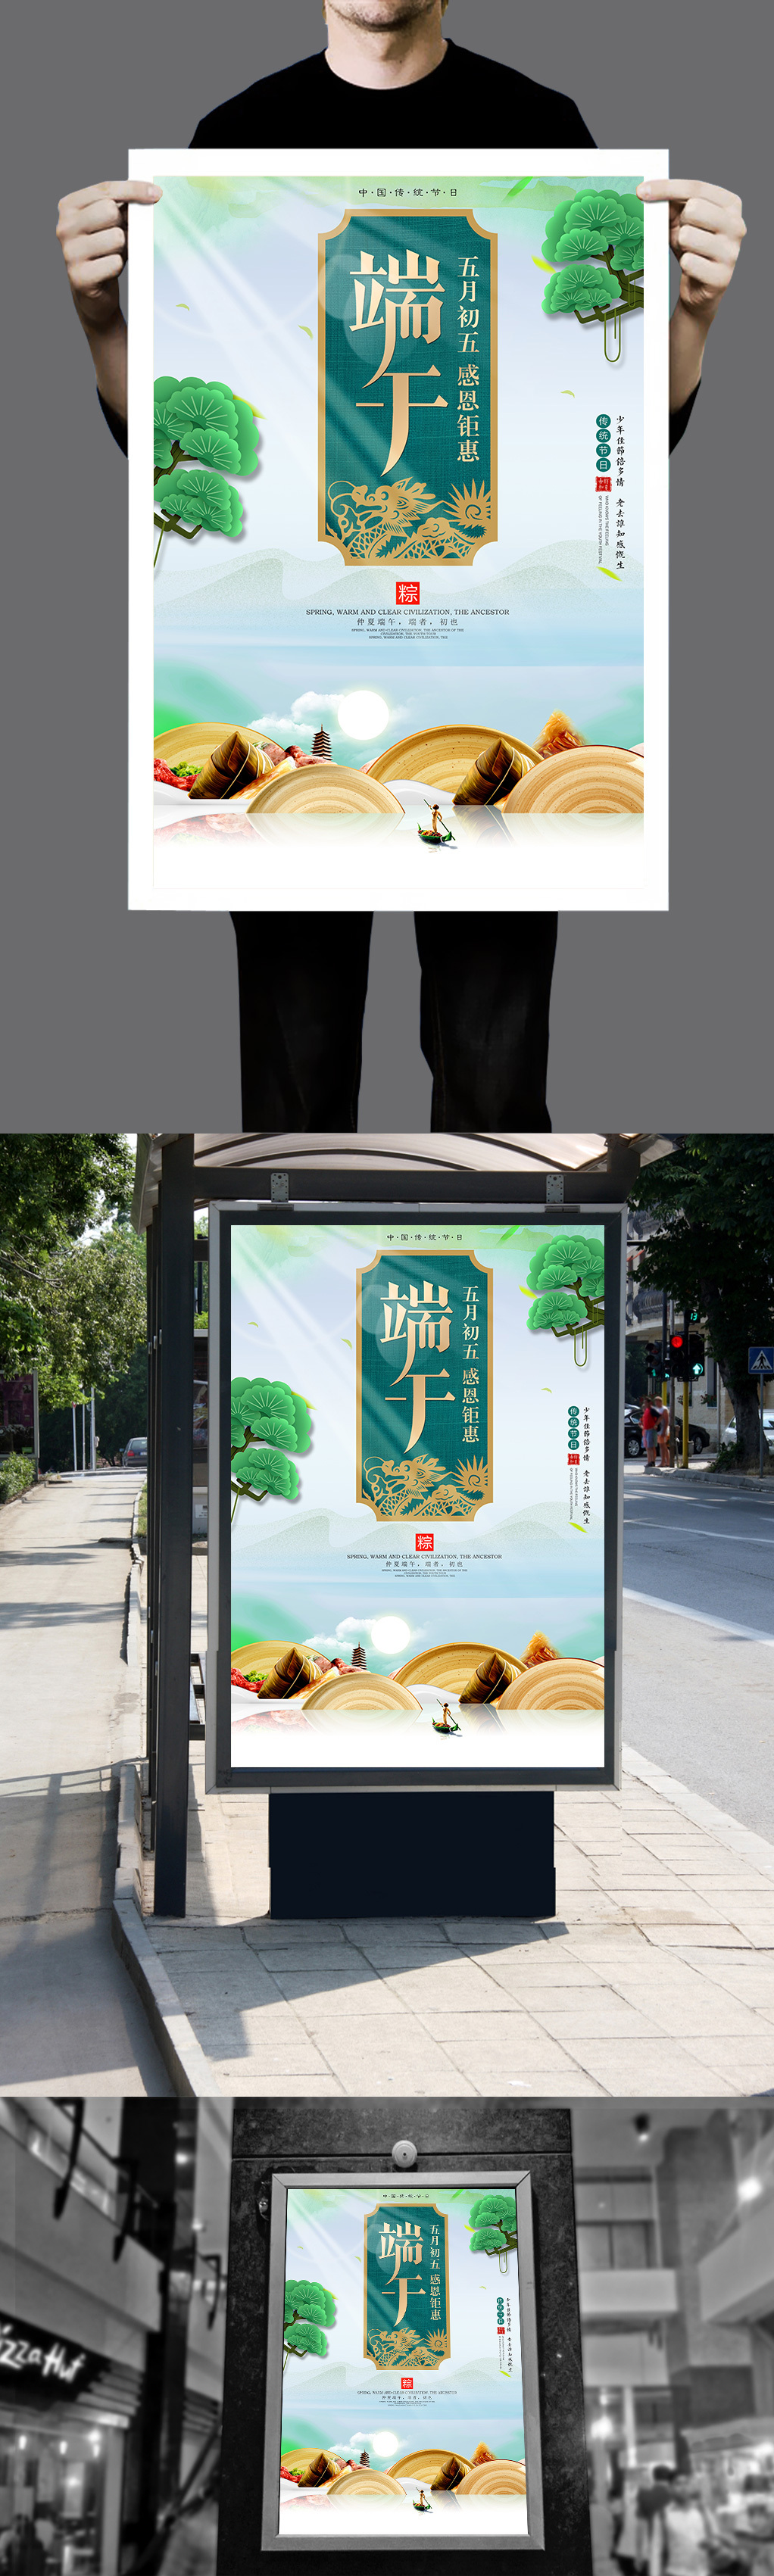 端午佳节中国风海报下载